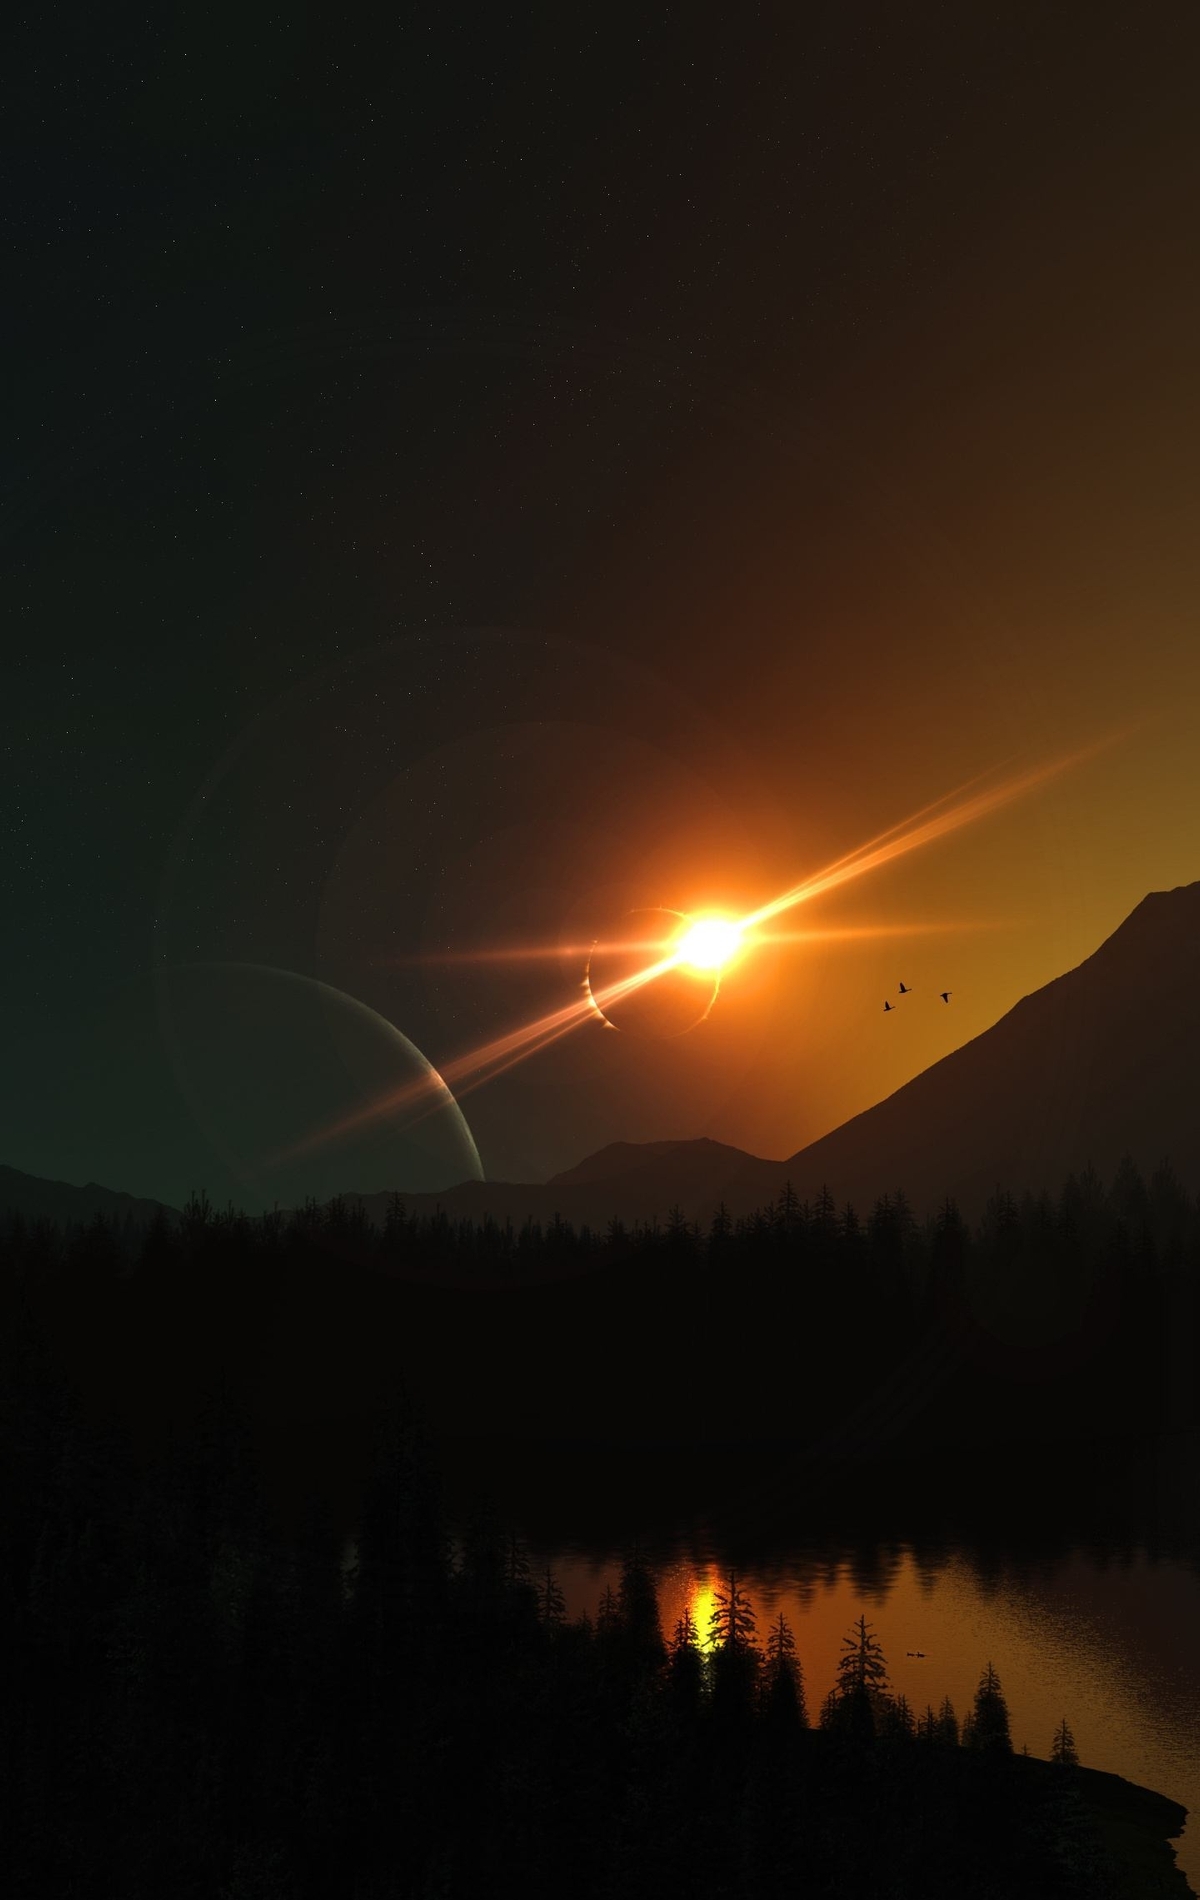 Картинка: Пейзаж, явление, солнечное затмение, темень, планеты, горы, лес, озеро, лодка, люди